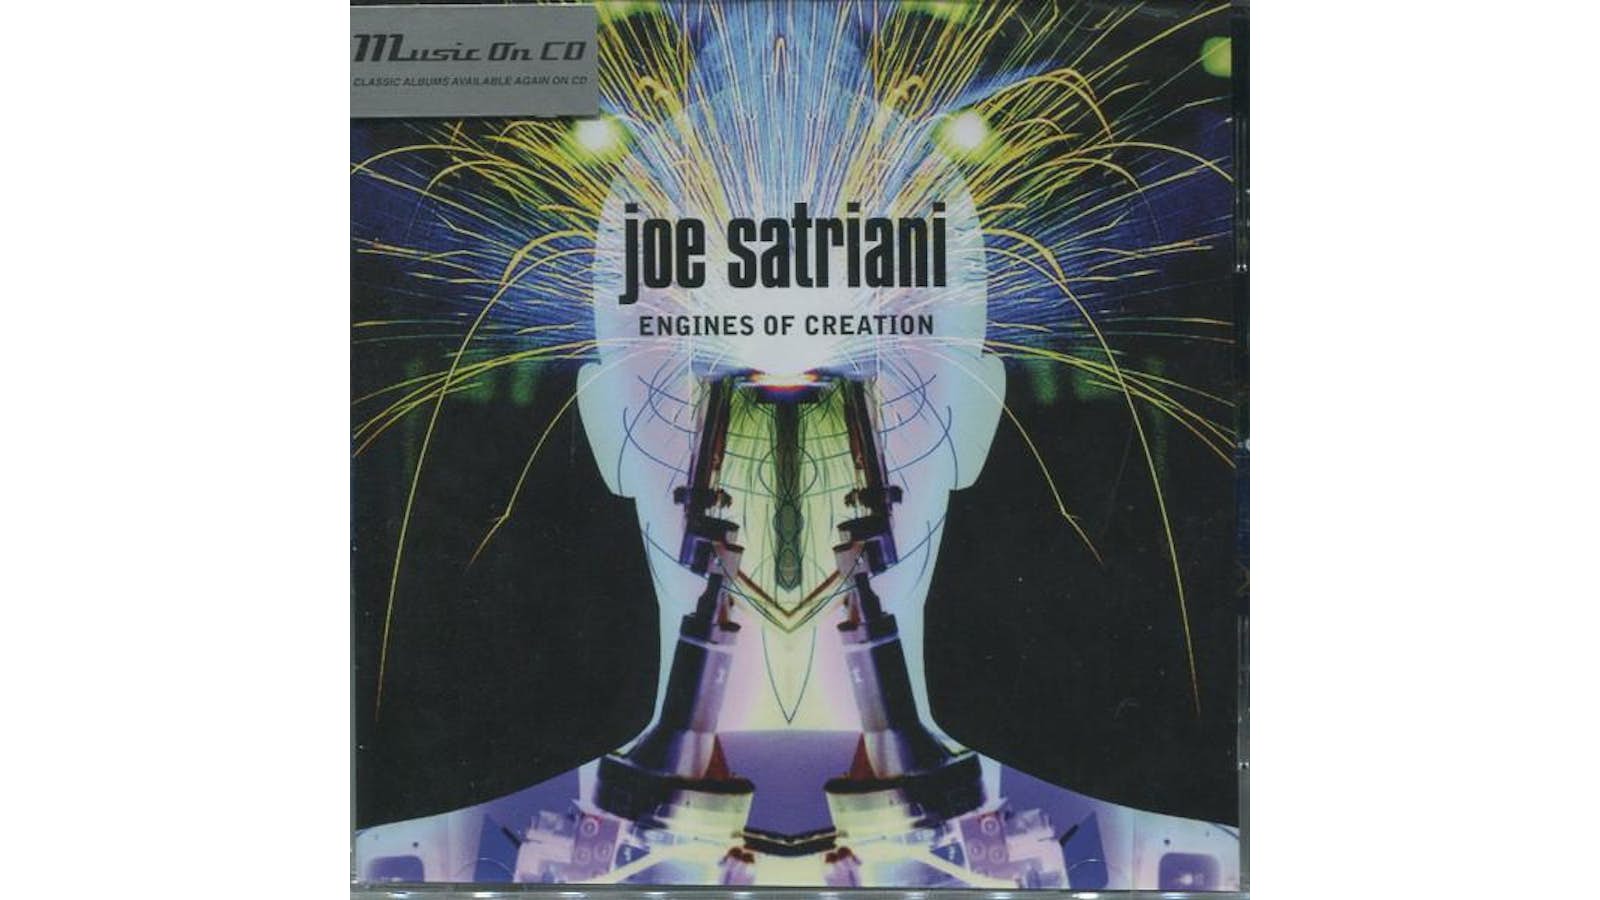 Joe Satriani - Engines of Creation